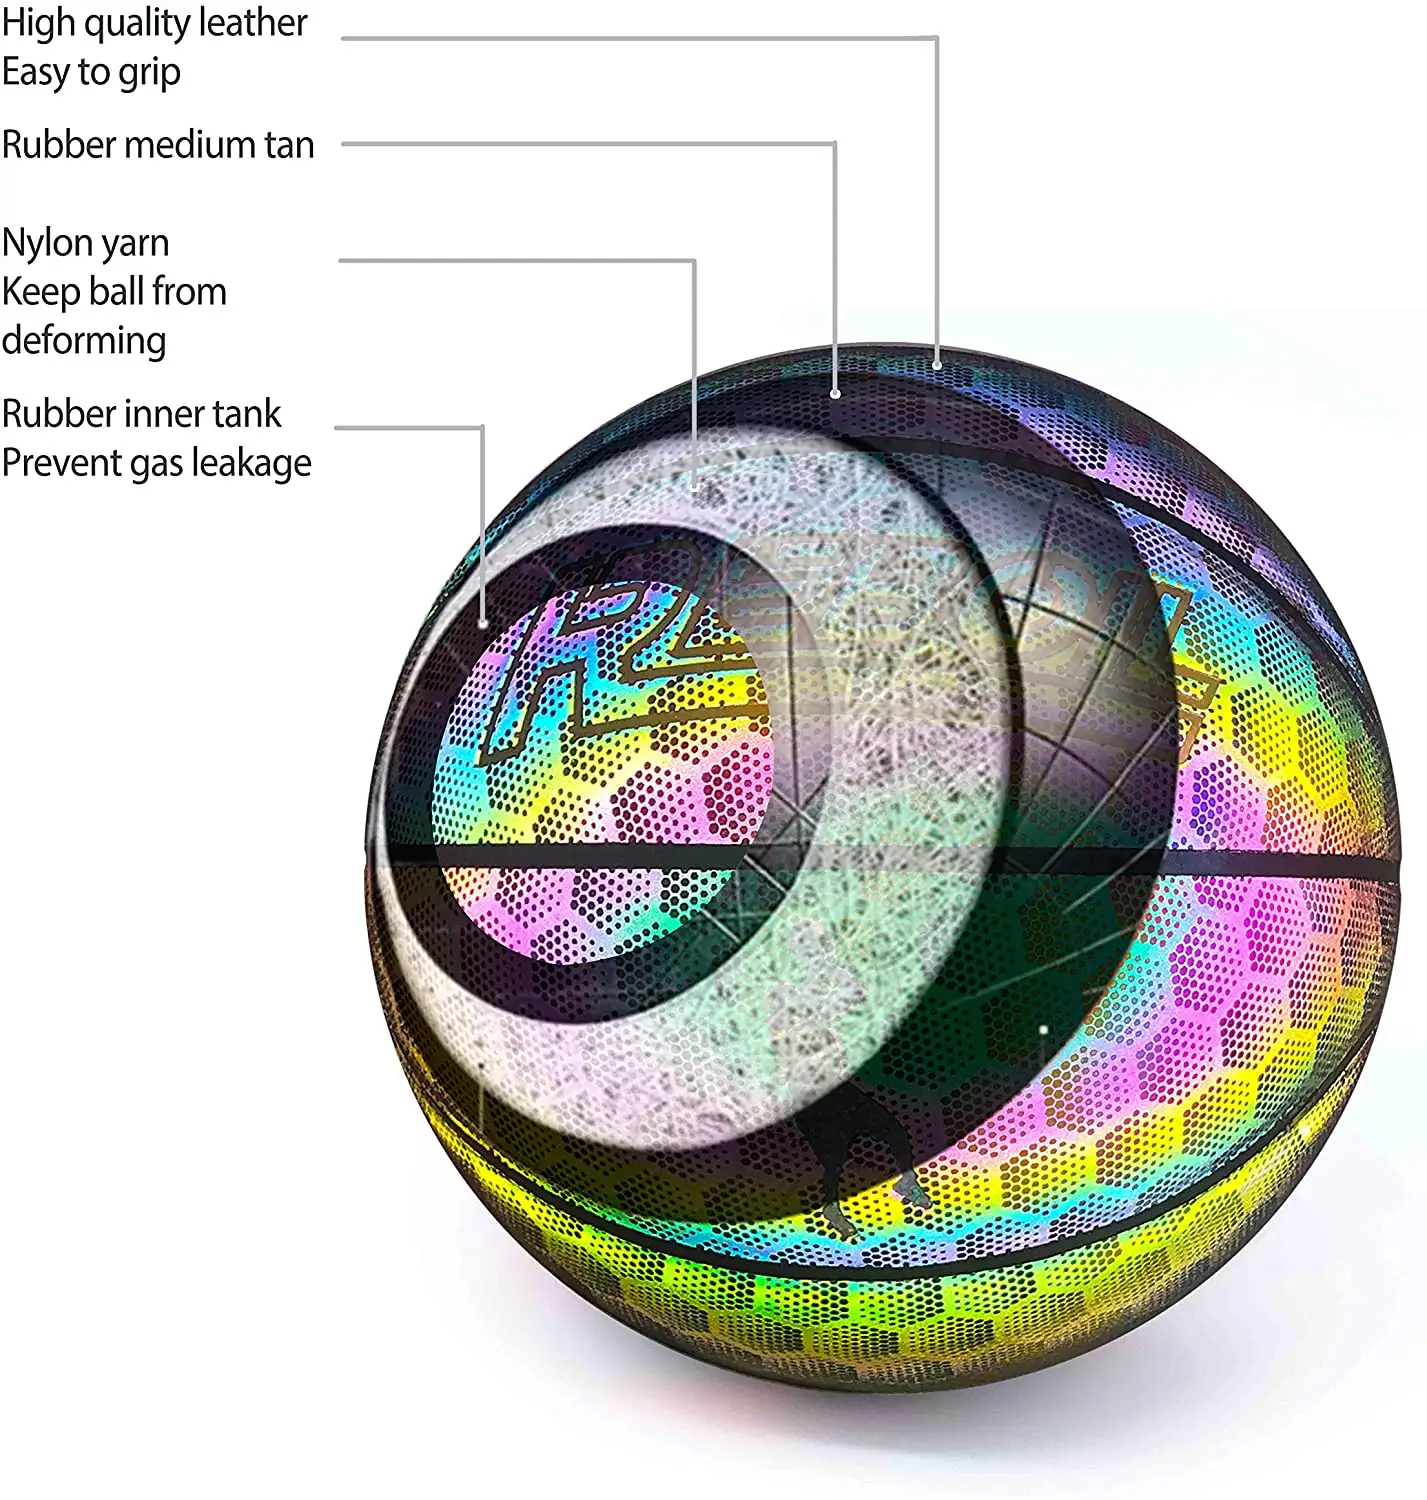 Smile boy — panier de Basket-Ball lumineux réfléchissant, taille officielle et poids holographique, Flash lumineux